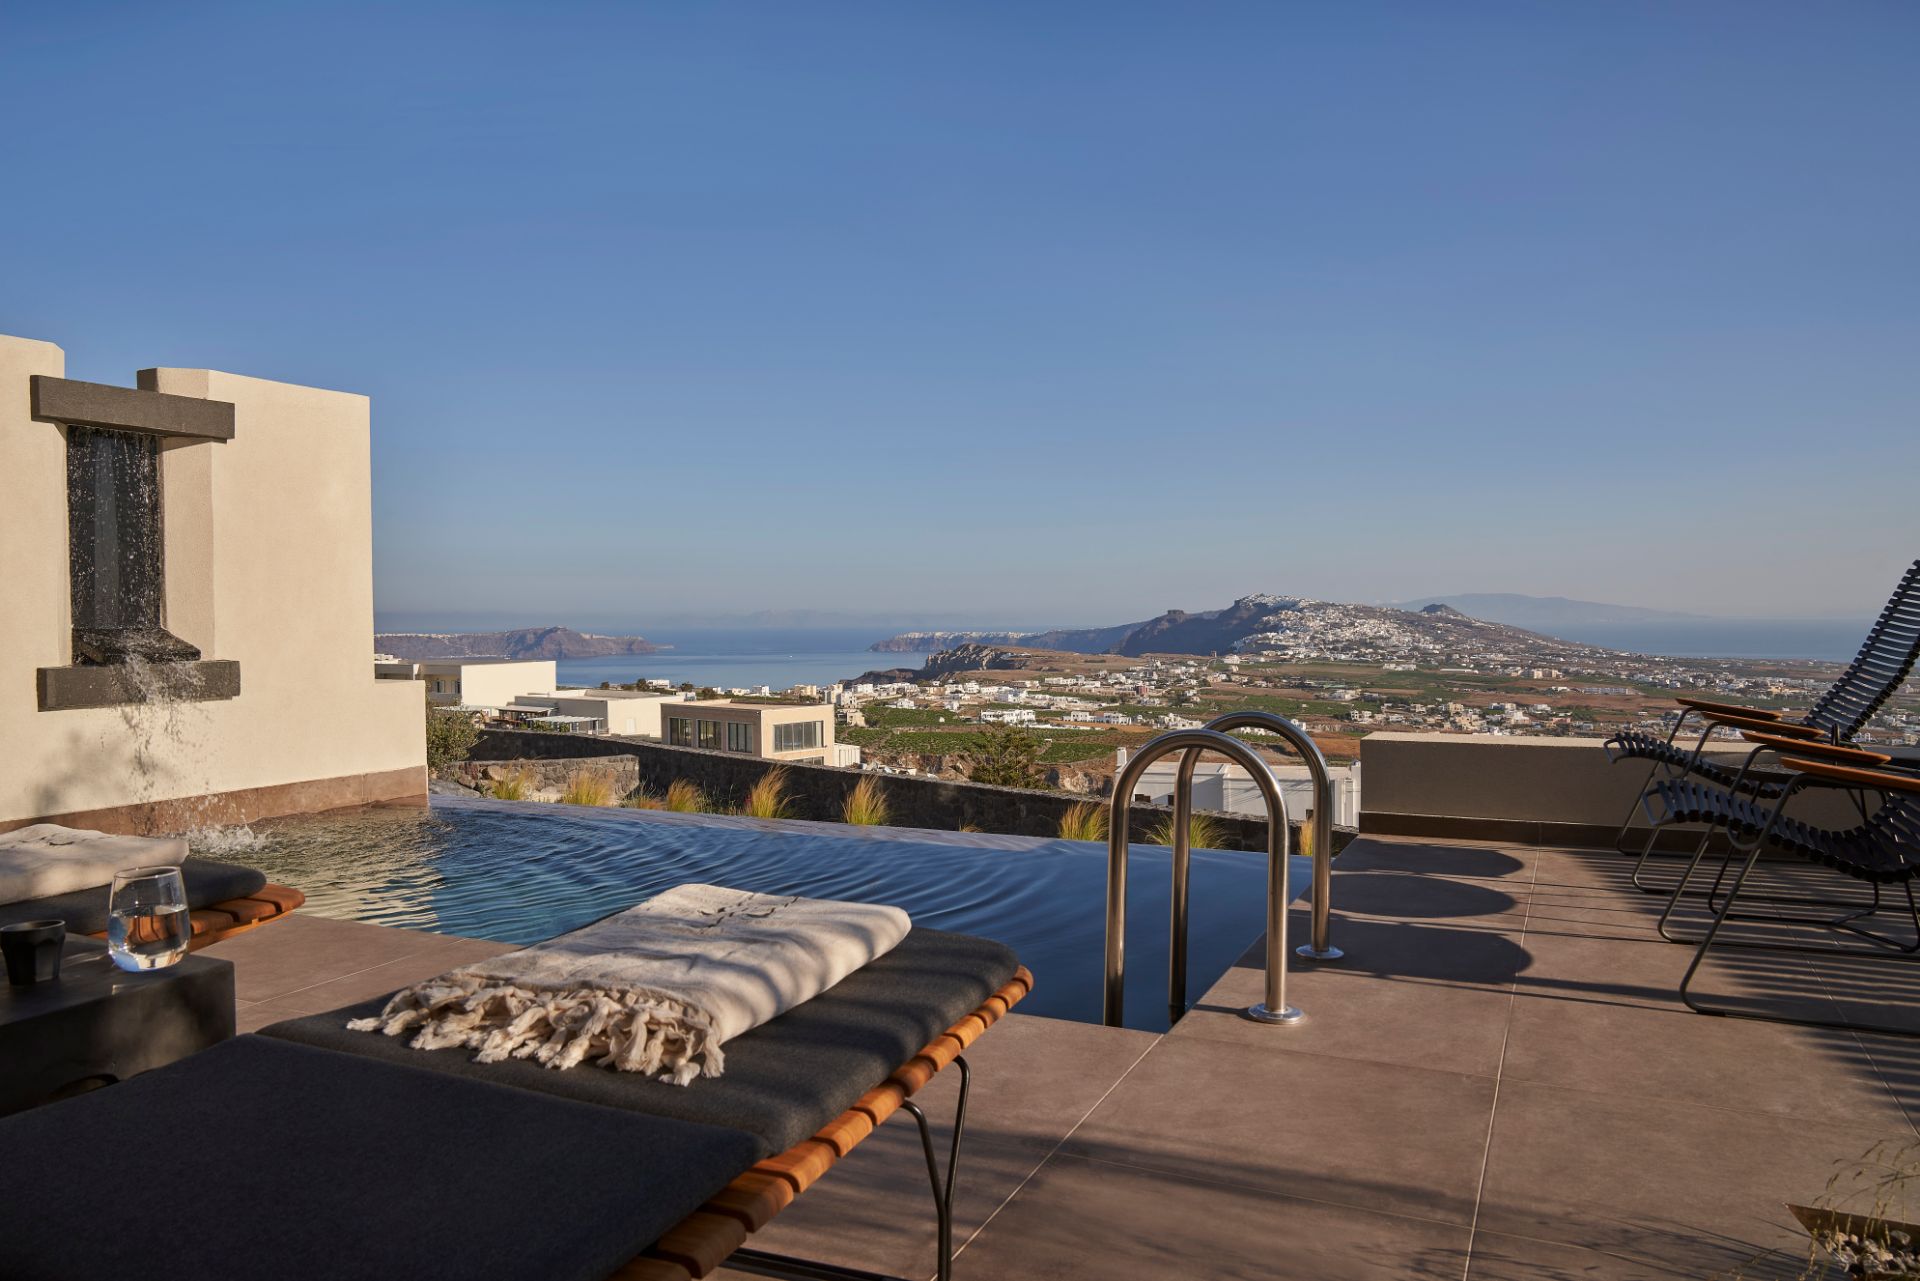 Apikia-Santorini-Supreme-Pool-Suite-Panoramic-View-10